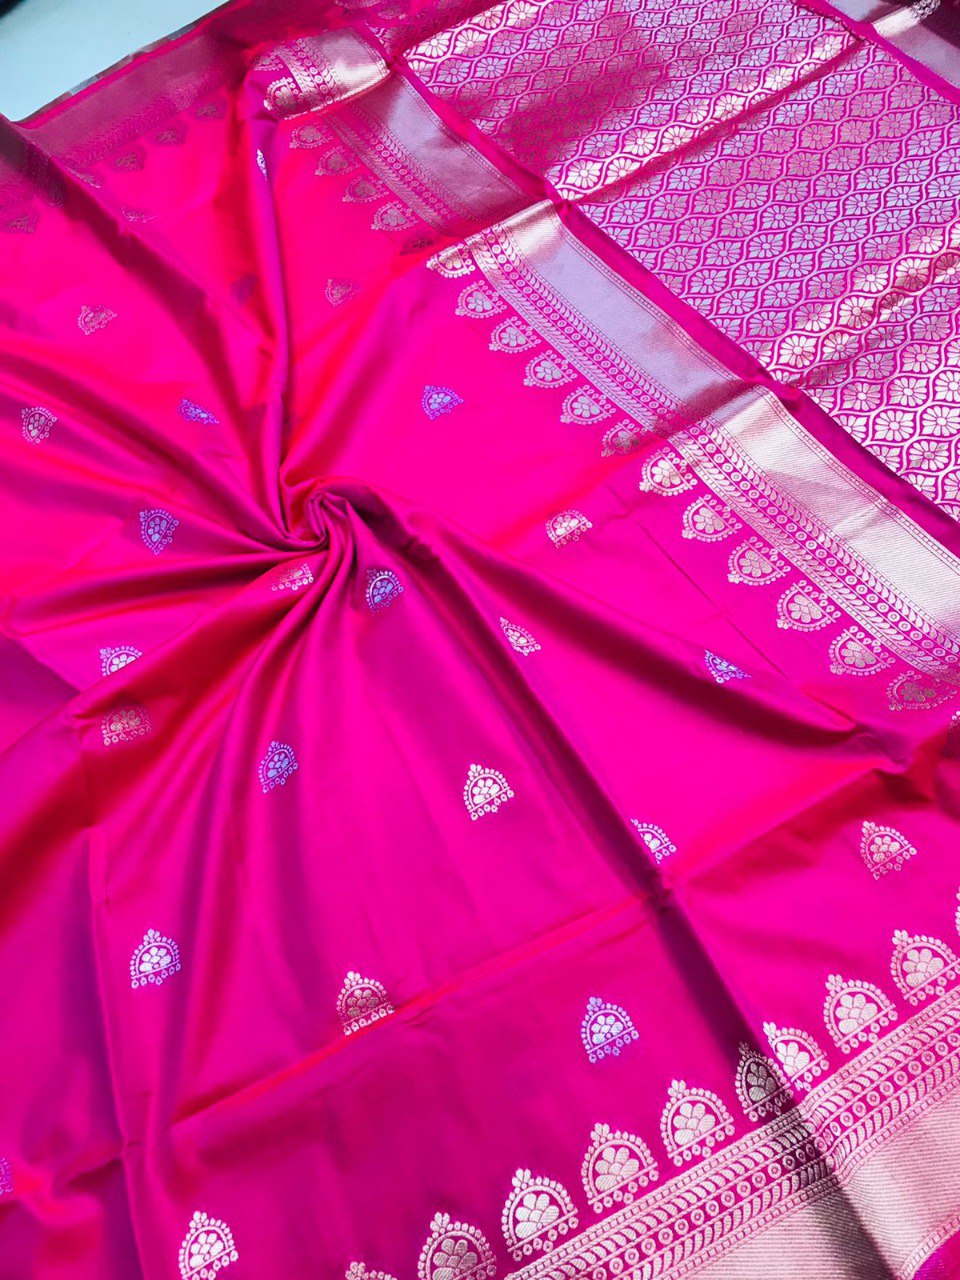 Phenomenal Dark Pink Banarasi Silk Saree With Classic Blouse Piece